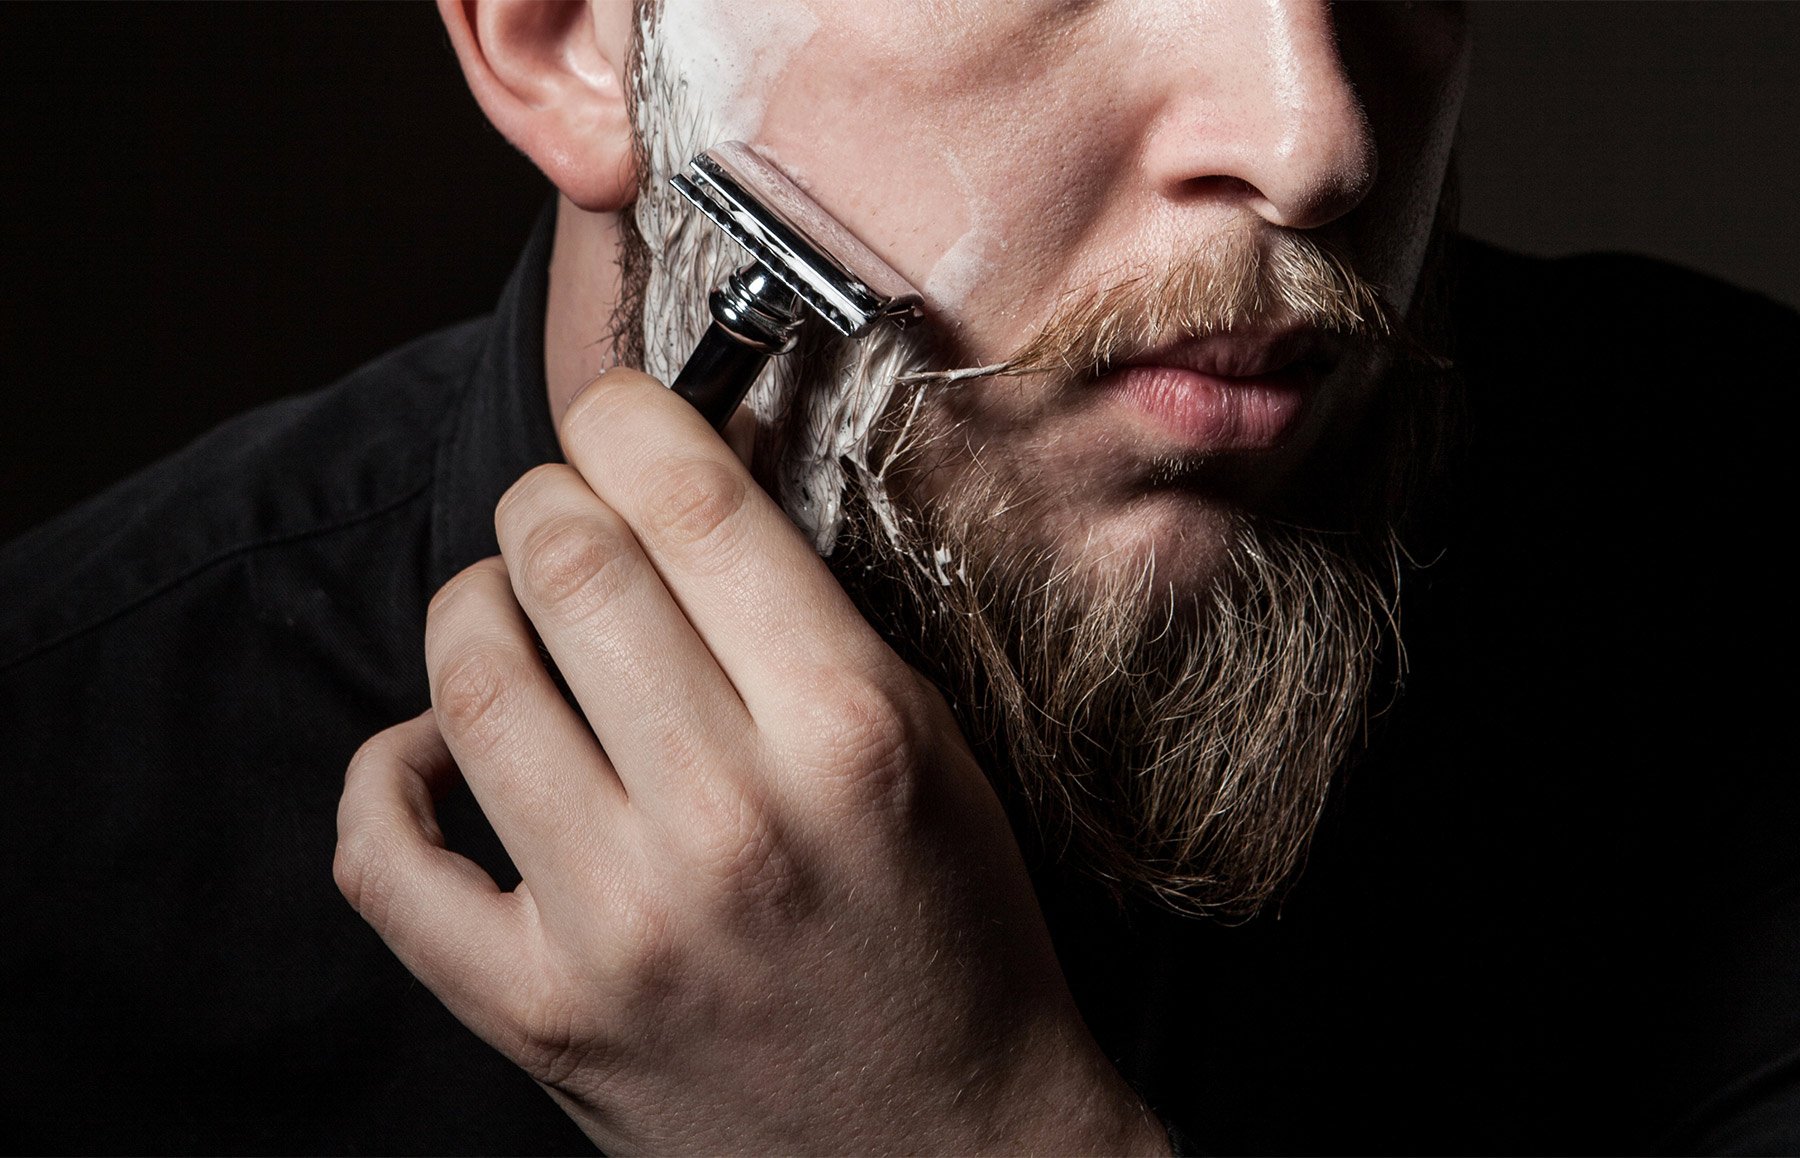 Классическое бритье. Мужчина бреется. Мужик с бритвой. Бритва для бороды барбершоп. Опаска для бритья.